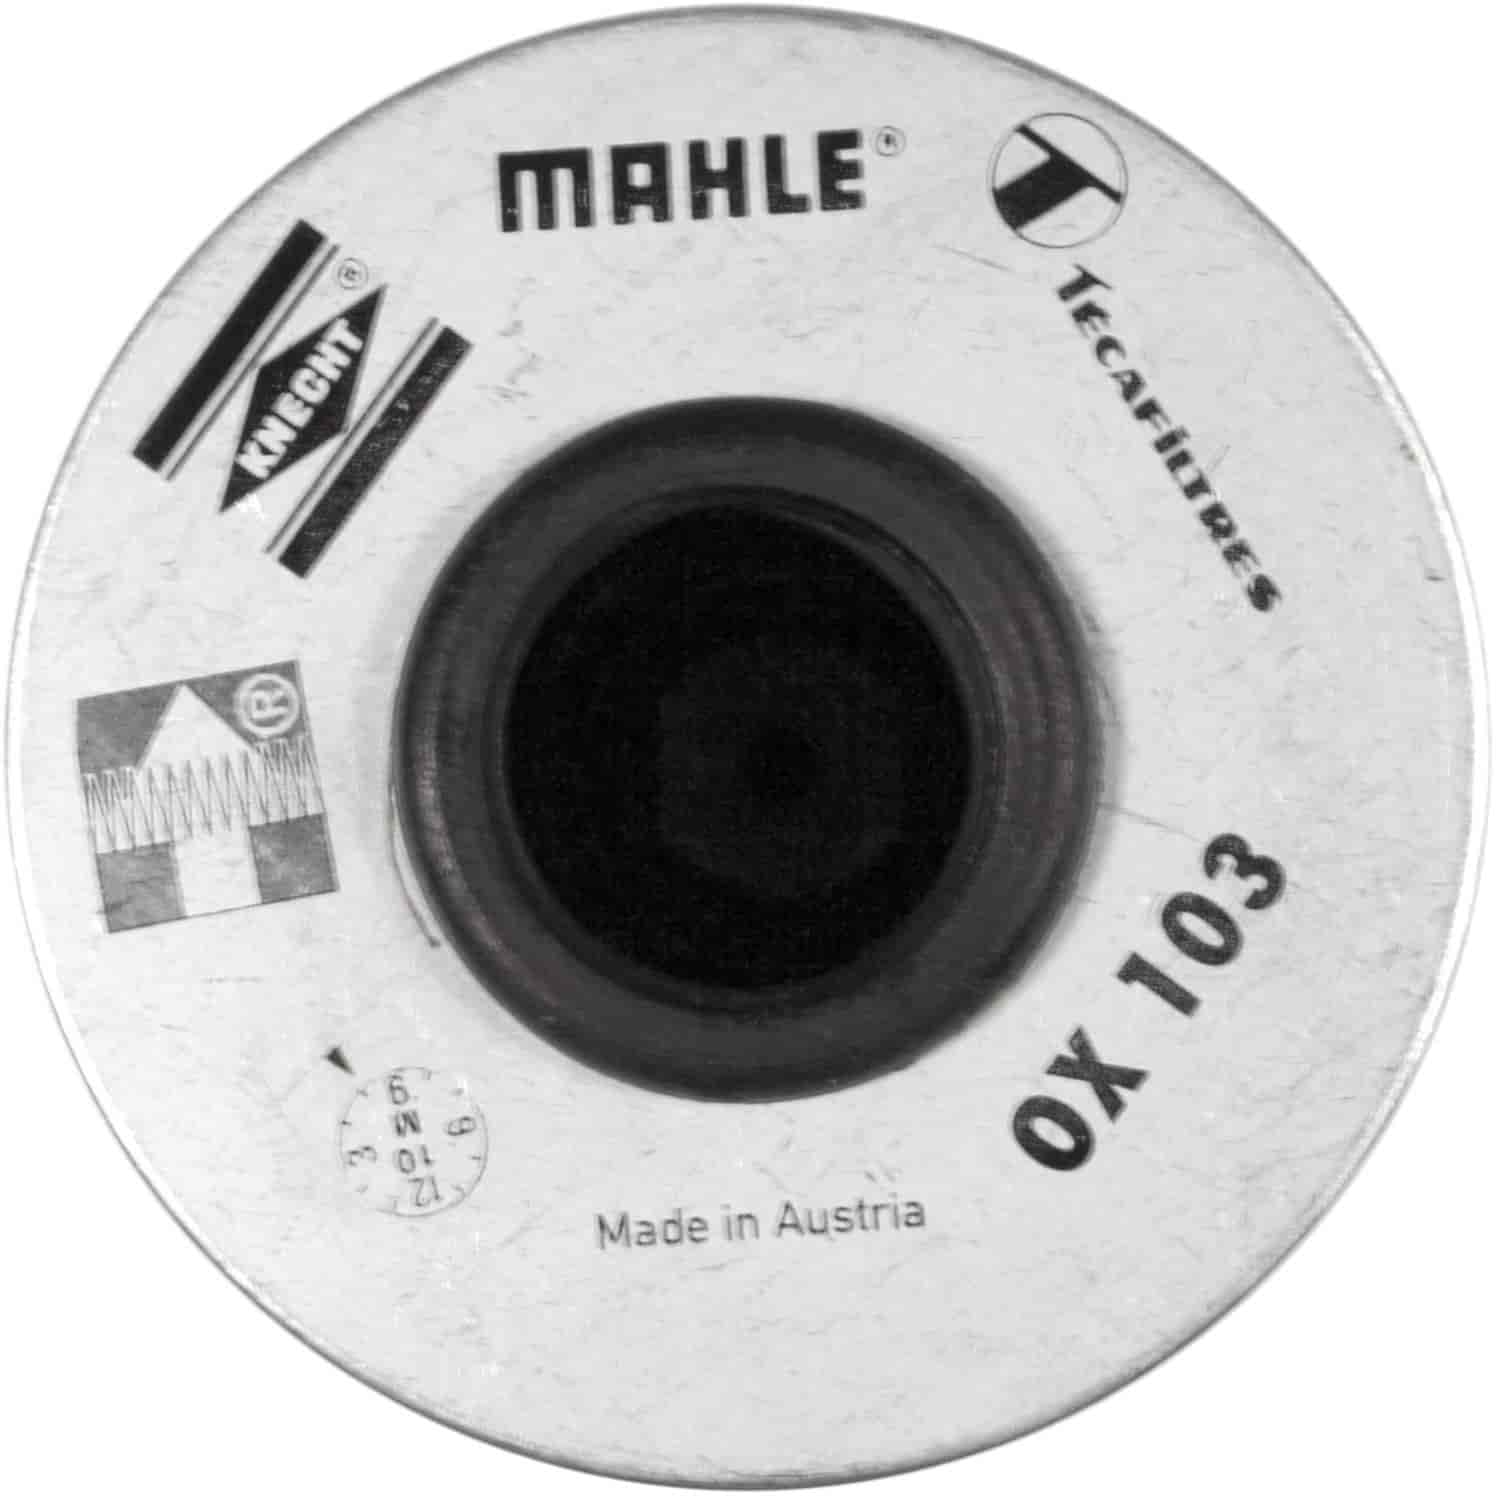 Mahle Oil Filter BMW 5-series 3.0L & 4.0L 7-series 4.0L & 5.0L 8-Series 5.0L & 5.6L 1991-